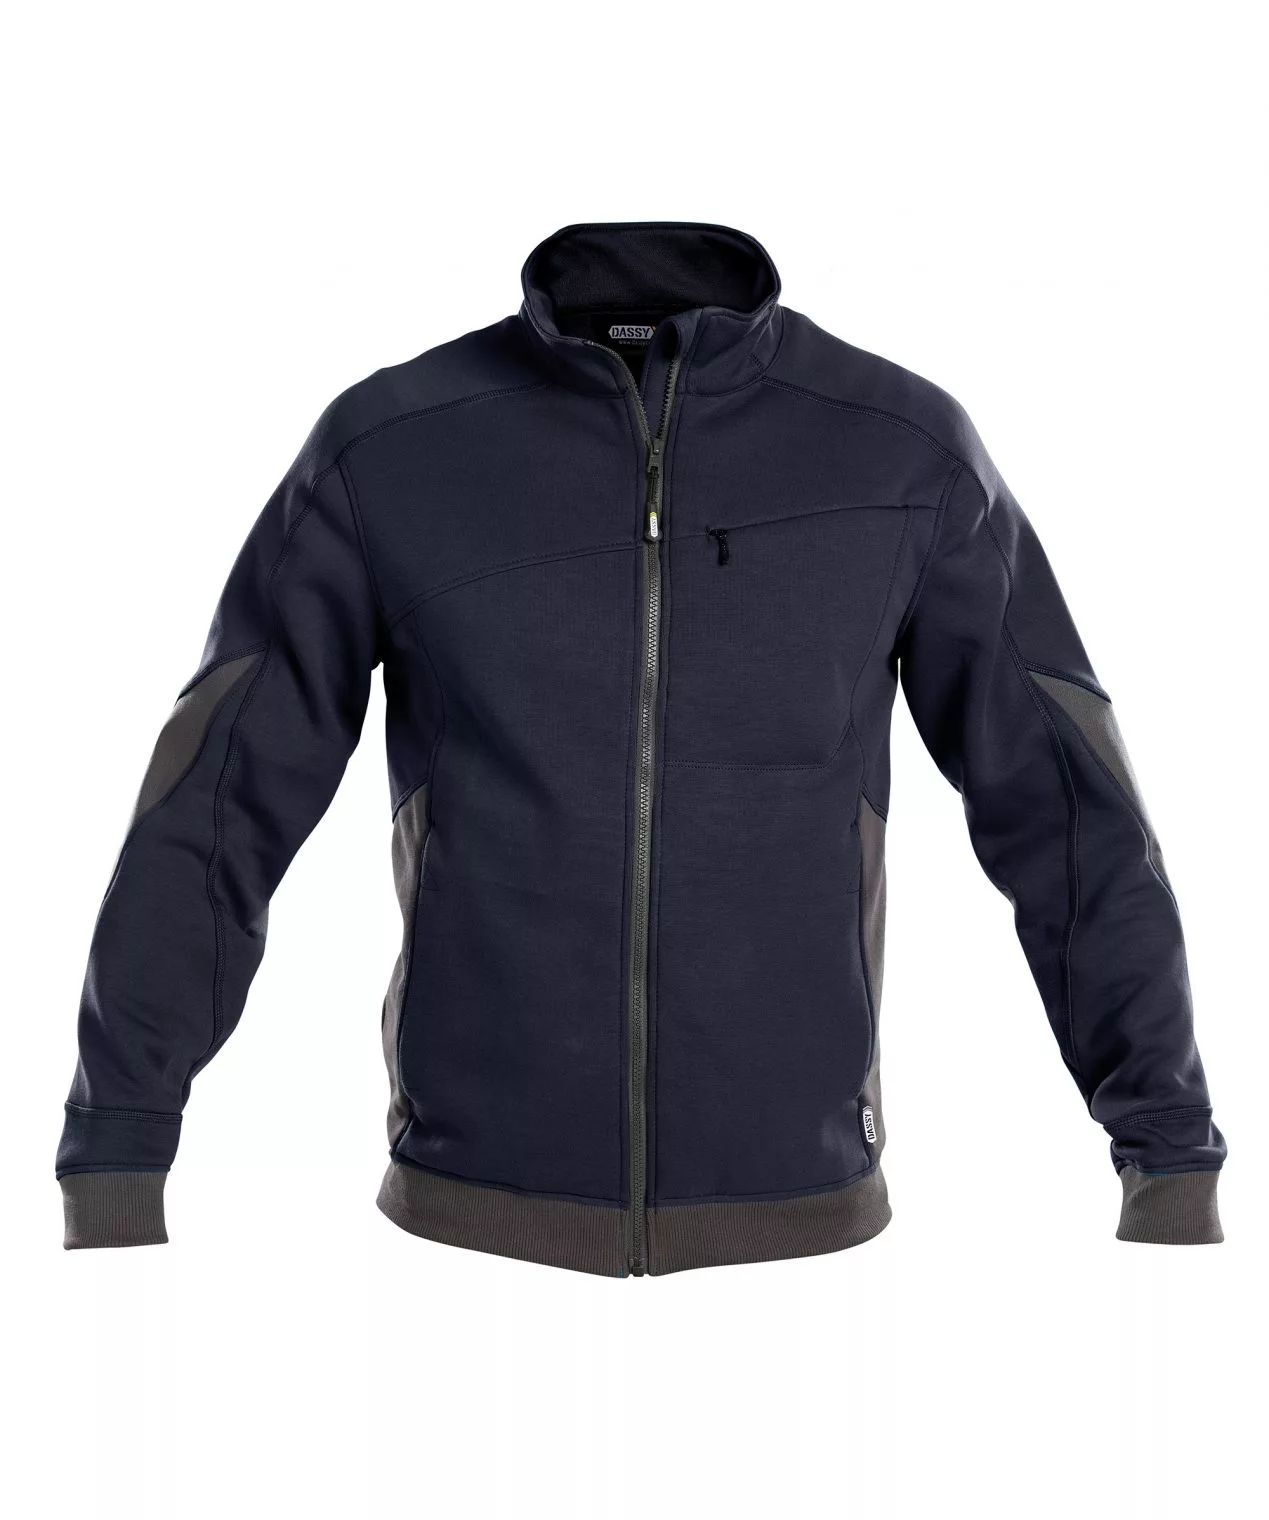 Dassy Velox: Sweatshirt Für Männer, Die Qualität Schätzen, Nachtblau